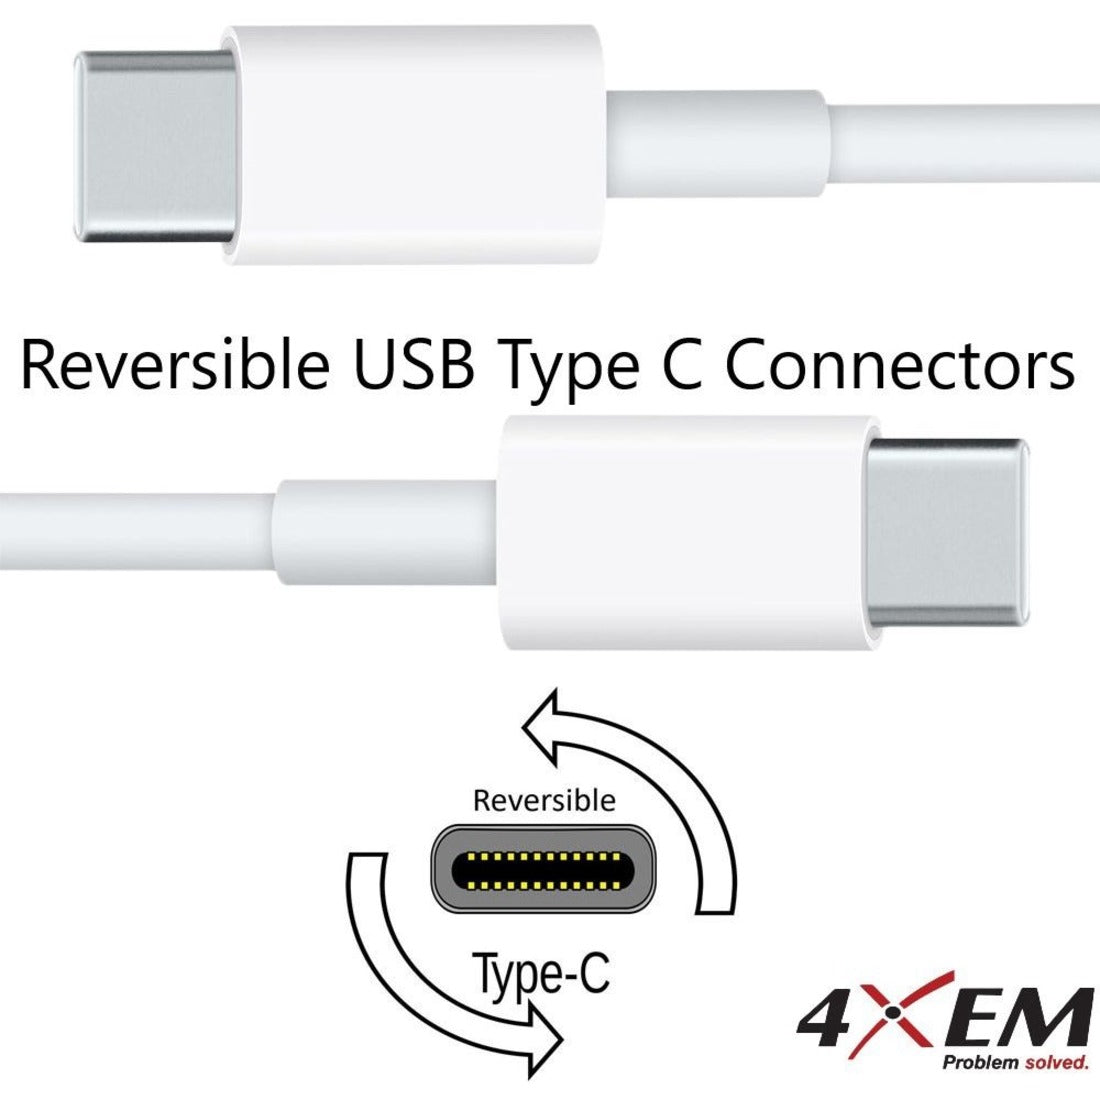 4XEM كبل USB-C إلى USB-C 6FT/2M ذكر إلى ذكر USB 3.1 Gen 2 10GBPS، قابل للعكس، شحن، شريحة E-marker، USB- تسليم الطاقة (USB PD)